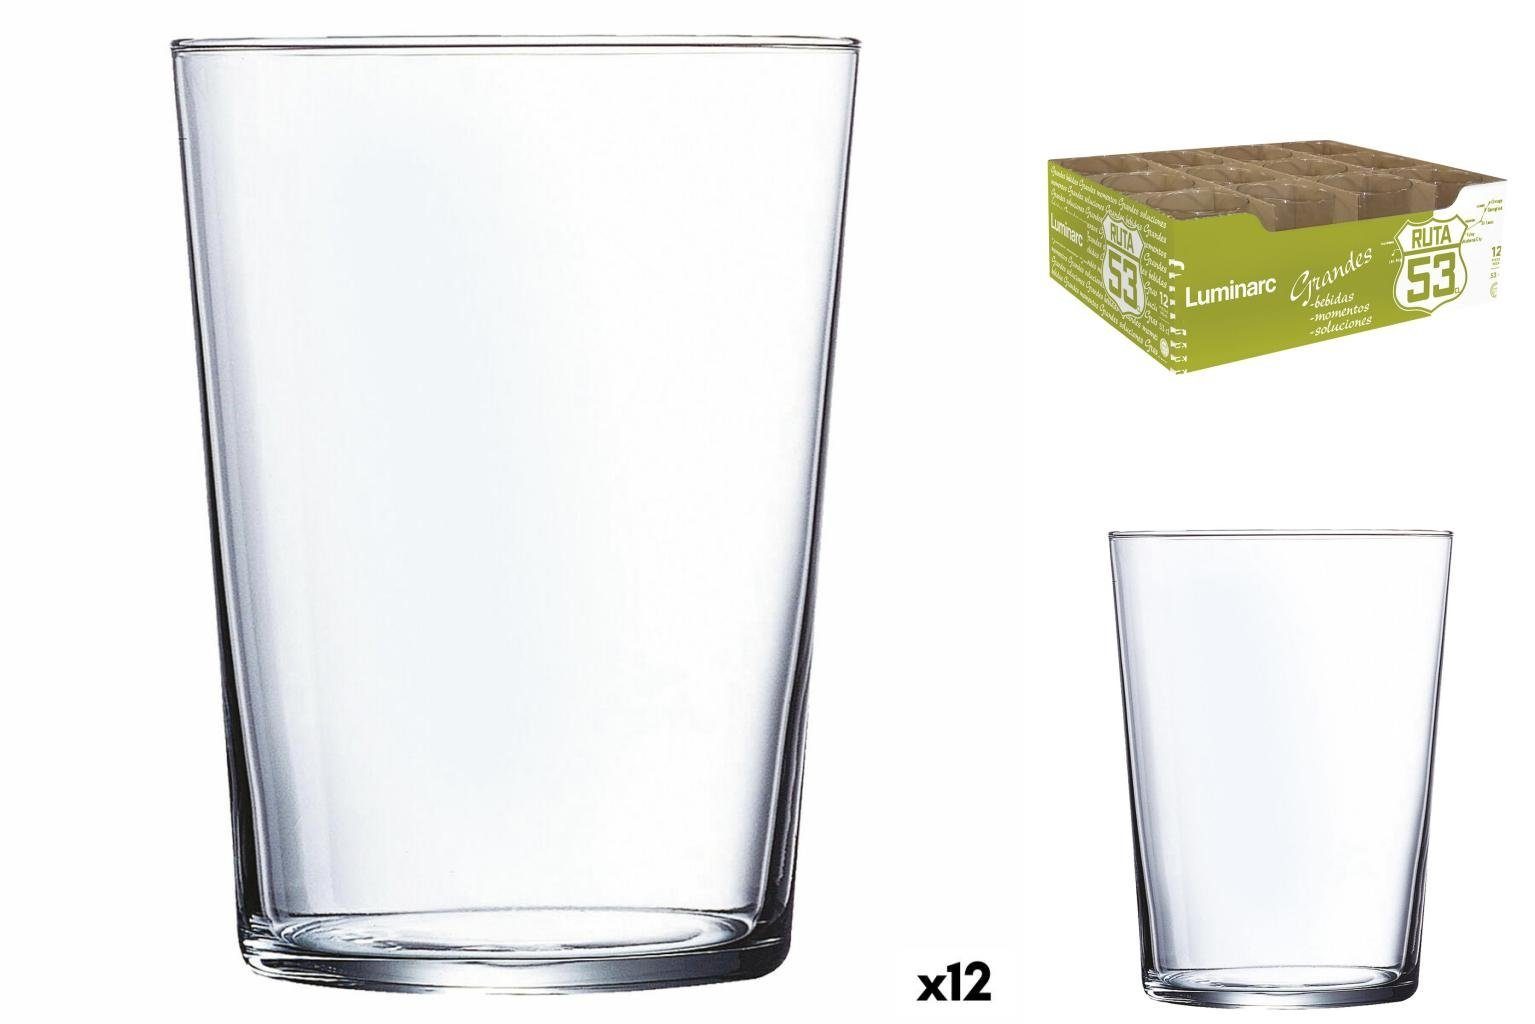 Becher Glas Ruta Glas Glas Durchsichtig 12 Stück, Luminarc 530 53 ml Luminarc